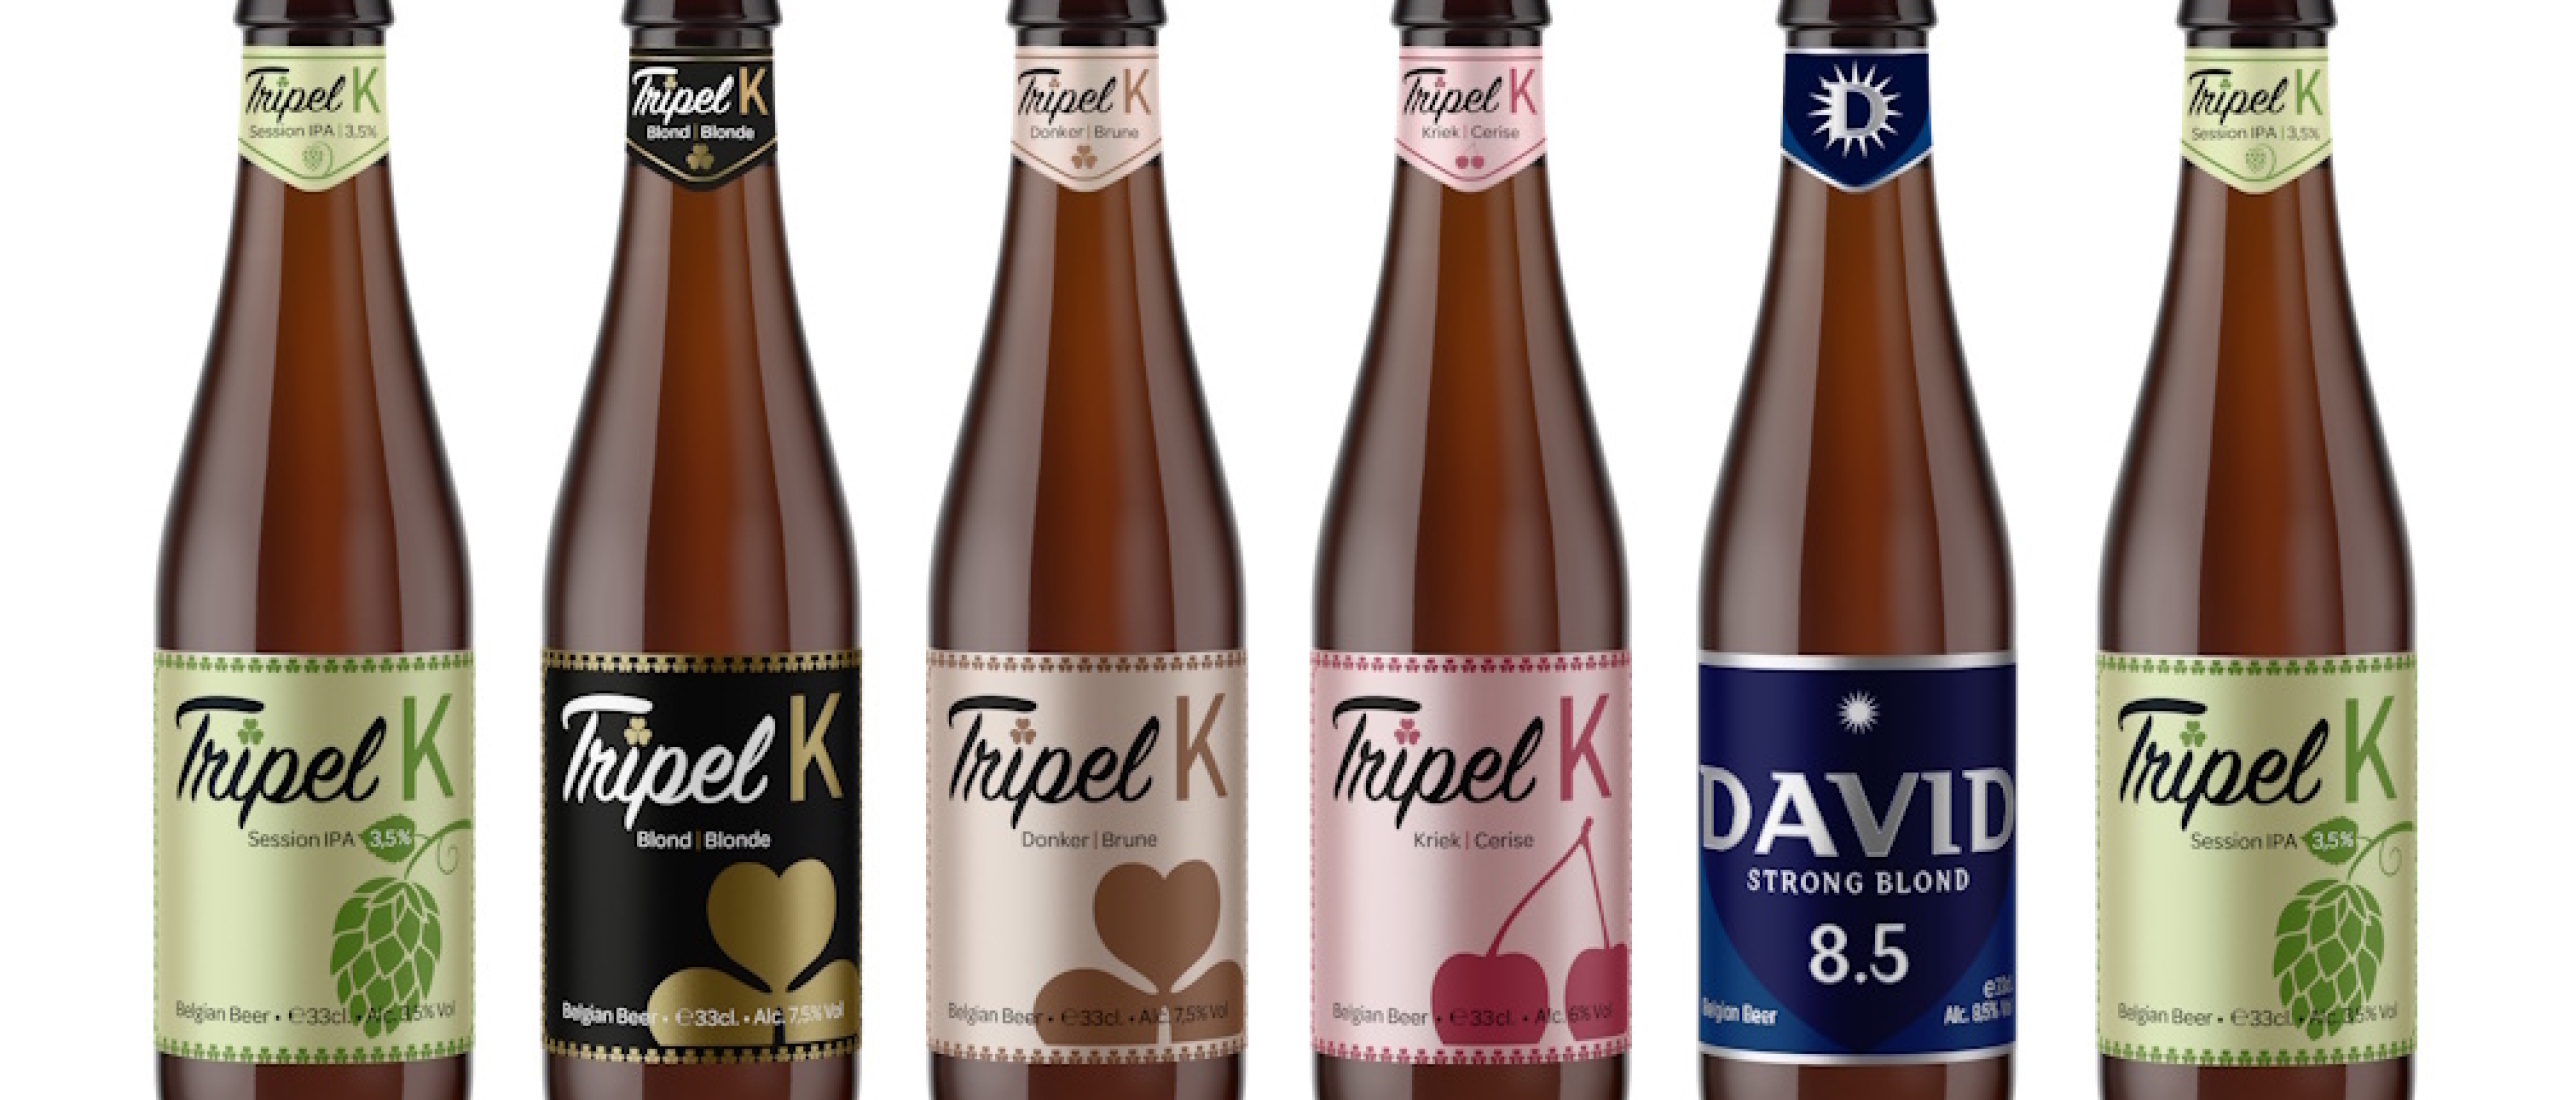 Bestel nu heerlijke bierboxen van Tripel K als eindejaarsgeschenk!